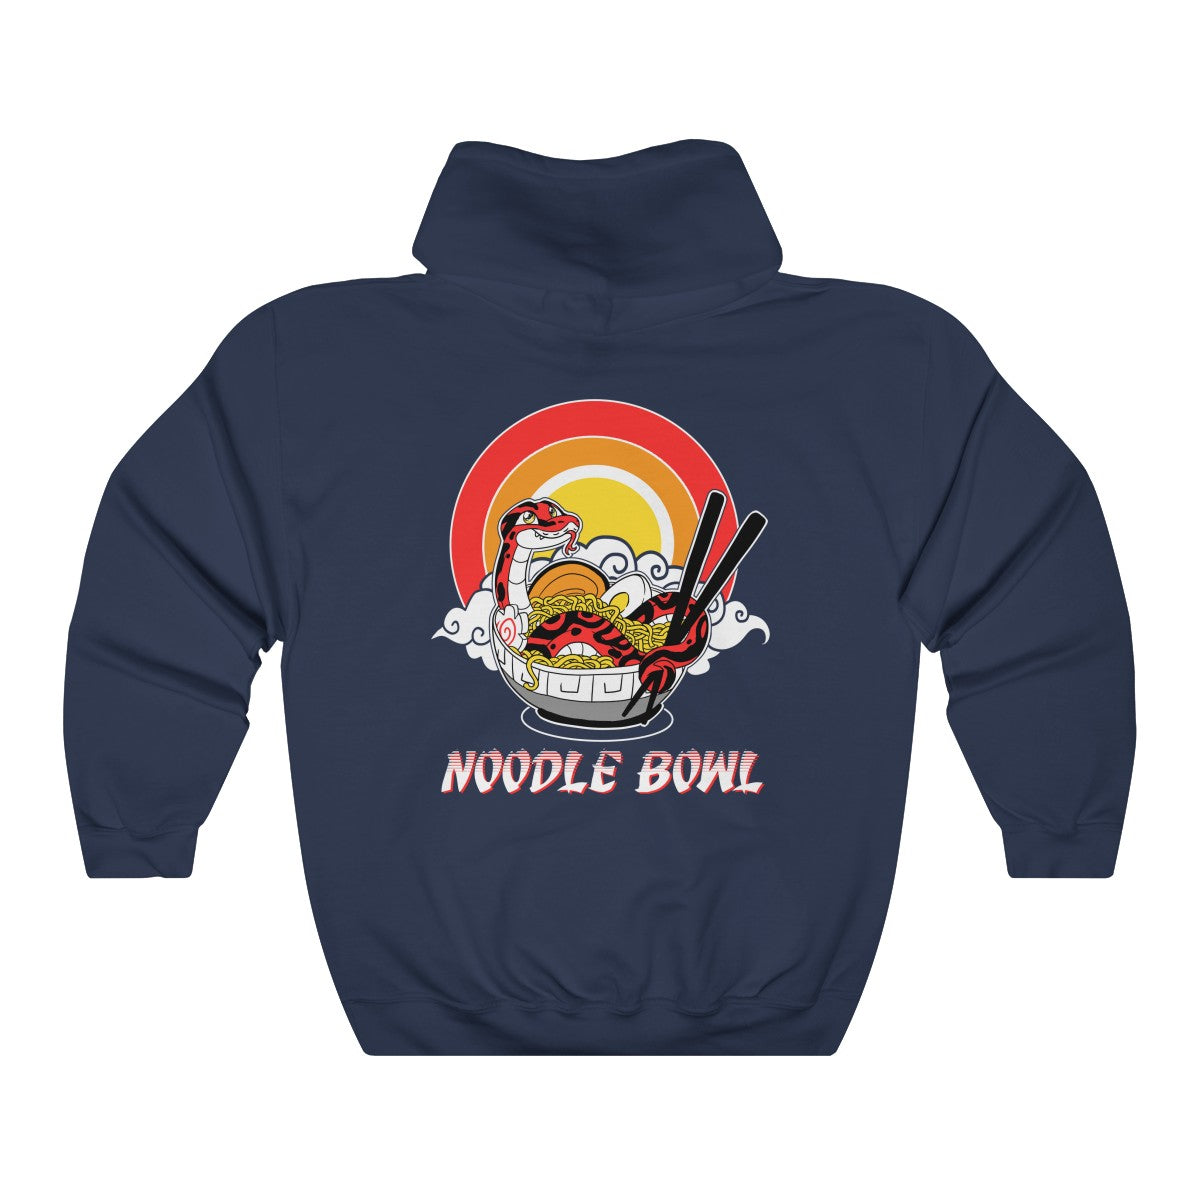 Noodle Bowl - Hoodie Hoodie Crunchy Crowe Navy Blue S 